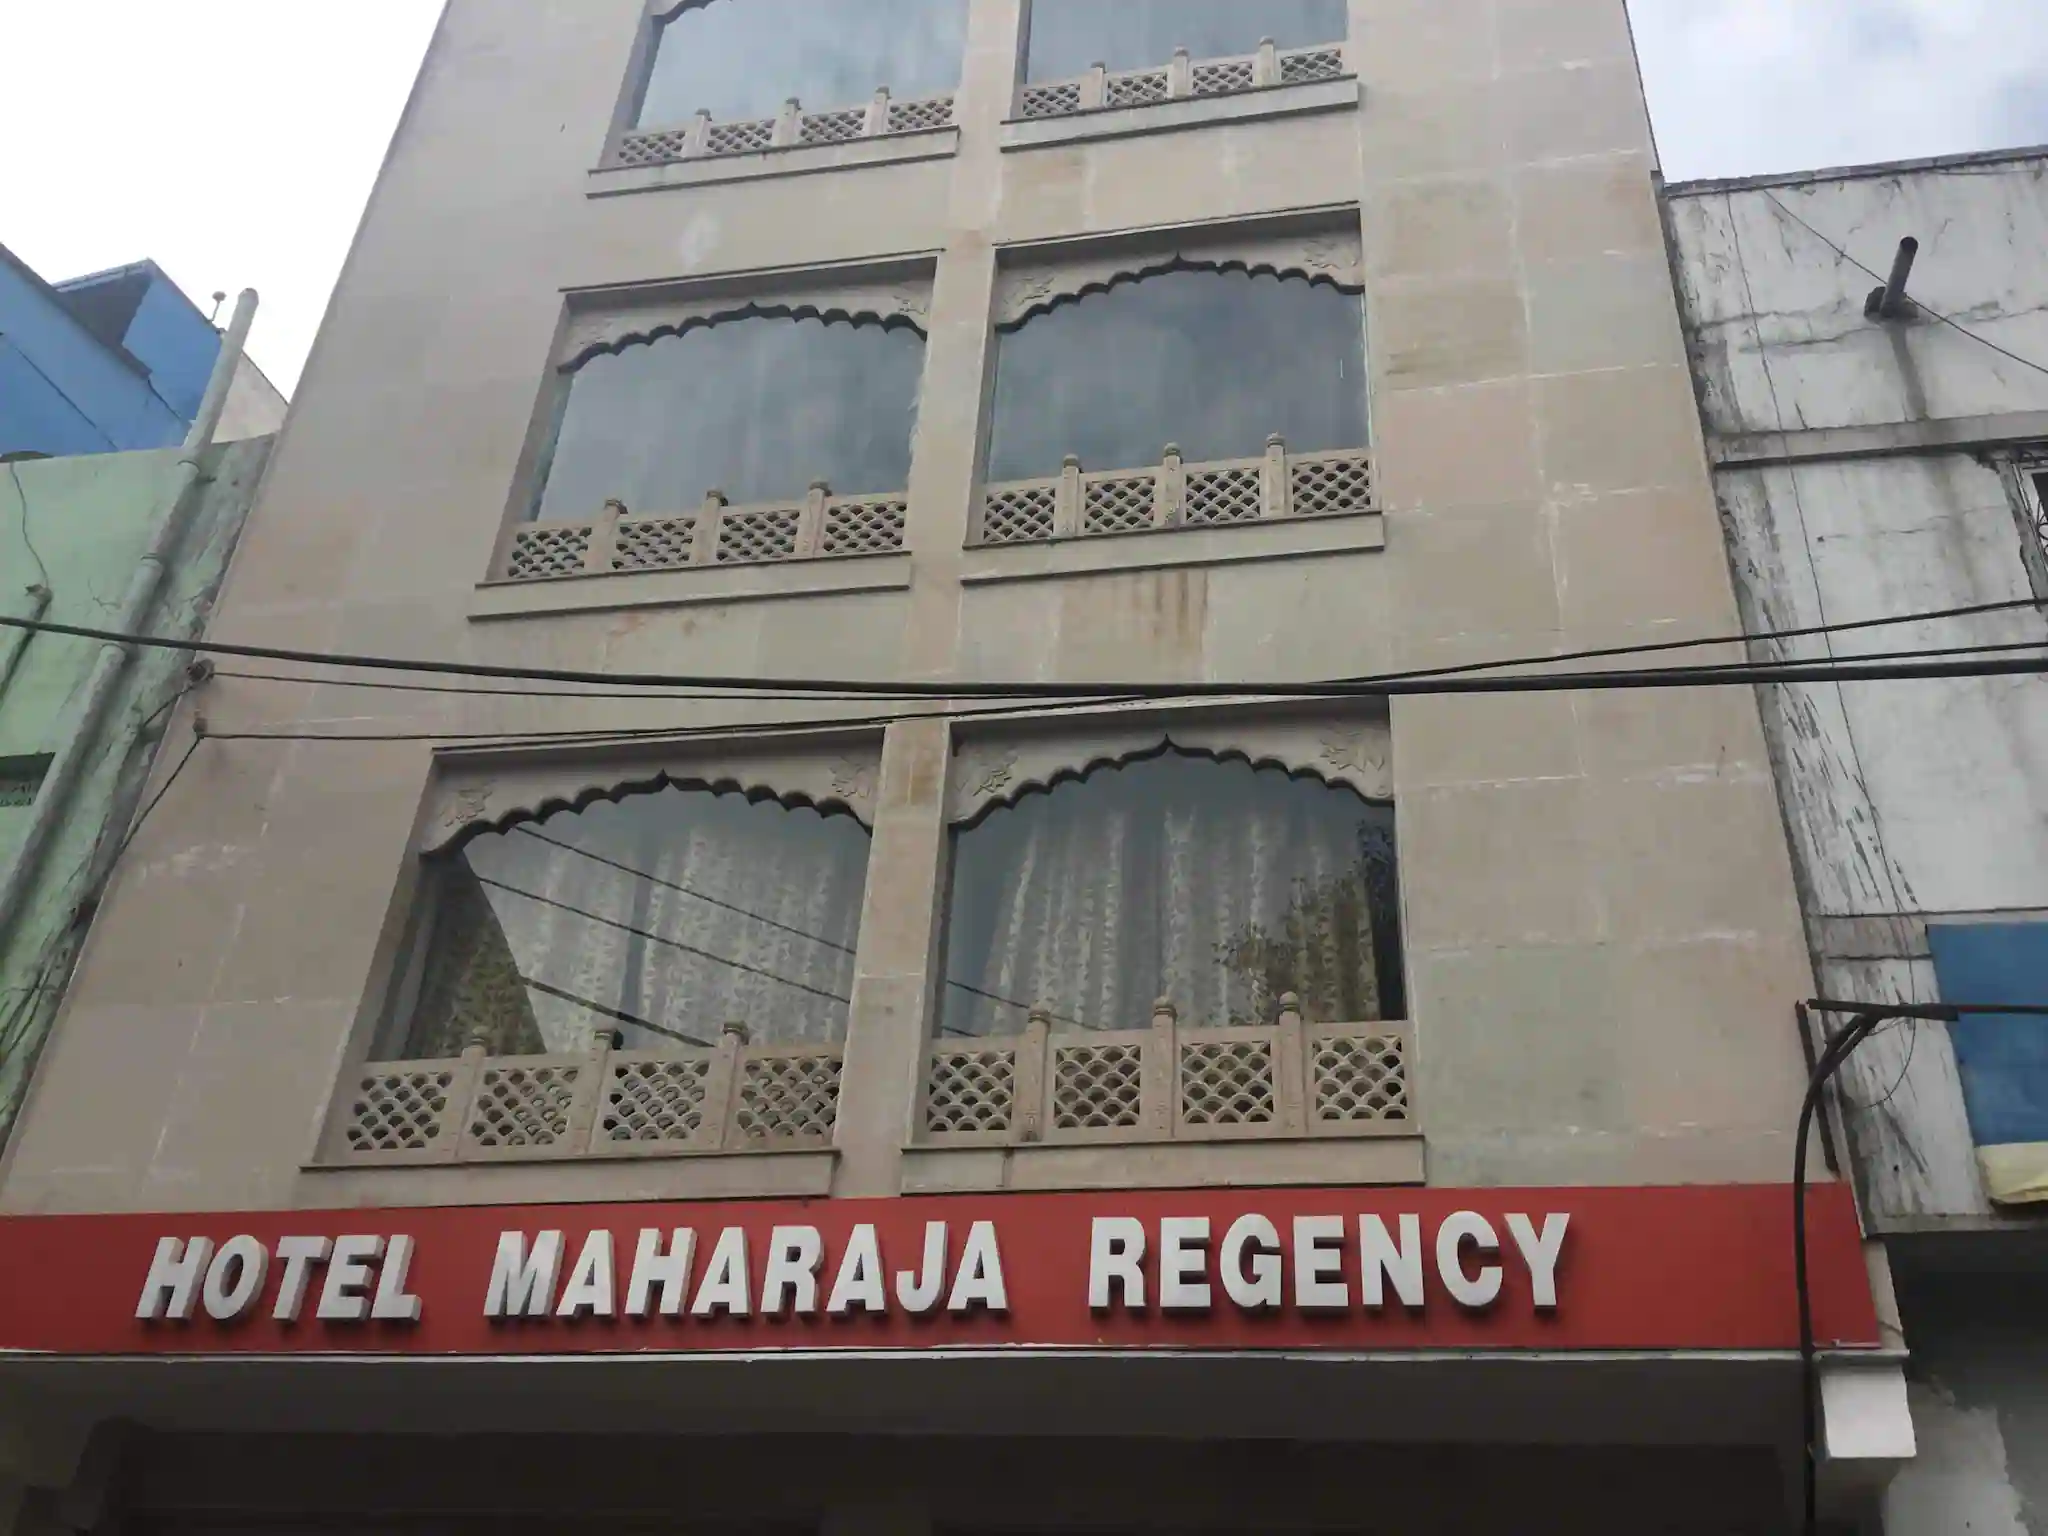 HOTEL MAHARAJA REGENCY